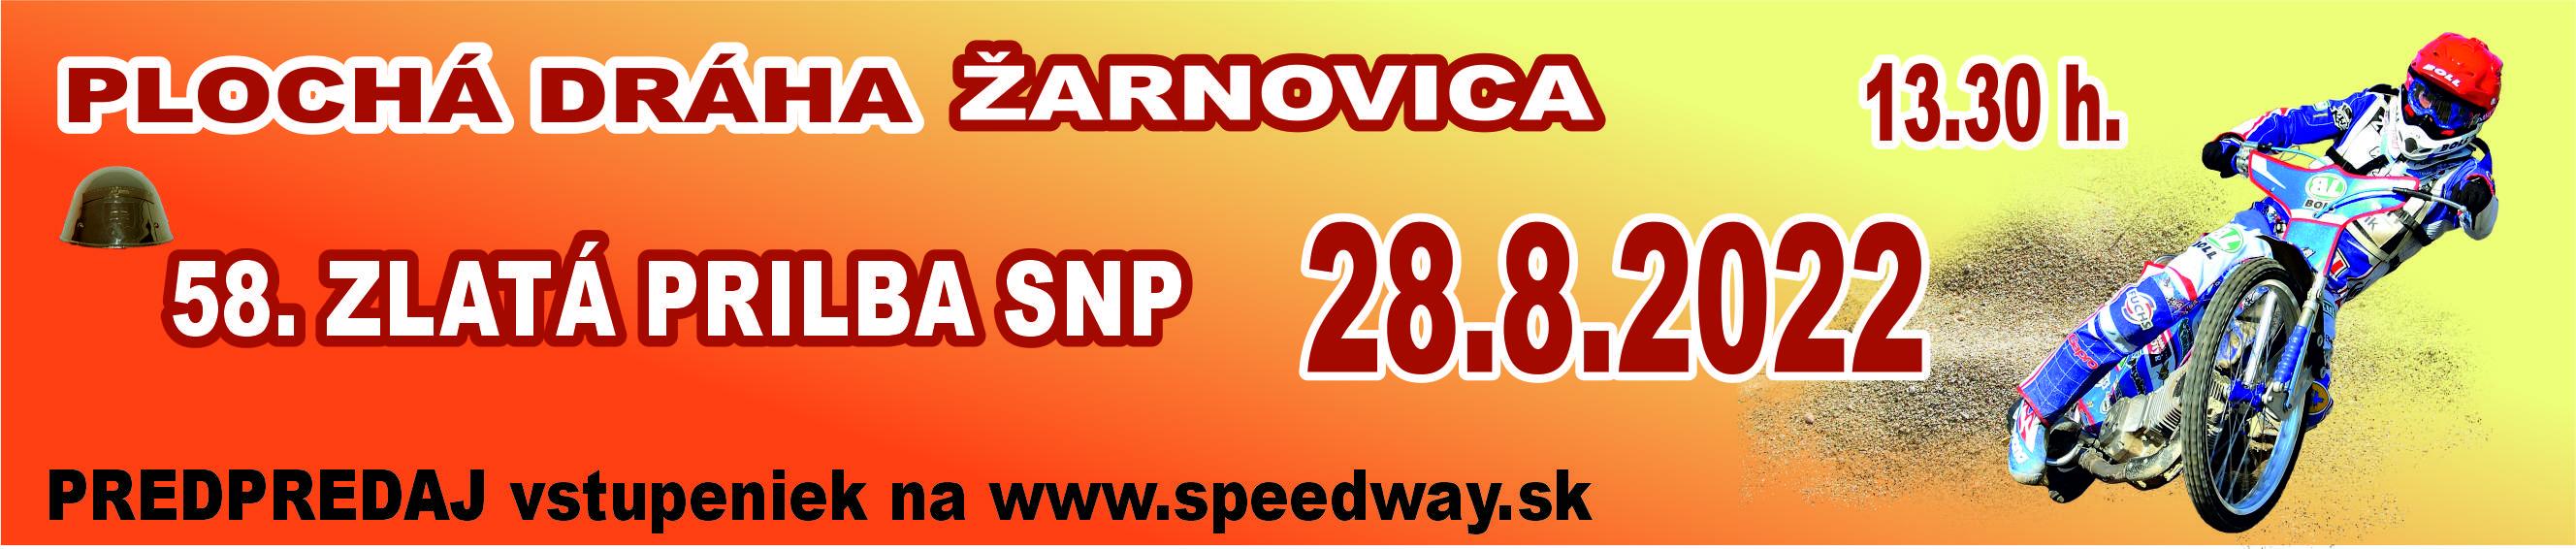 http://www.speedway.sk/